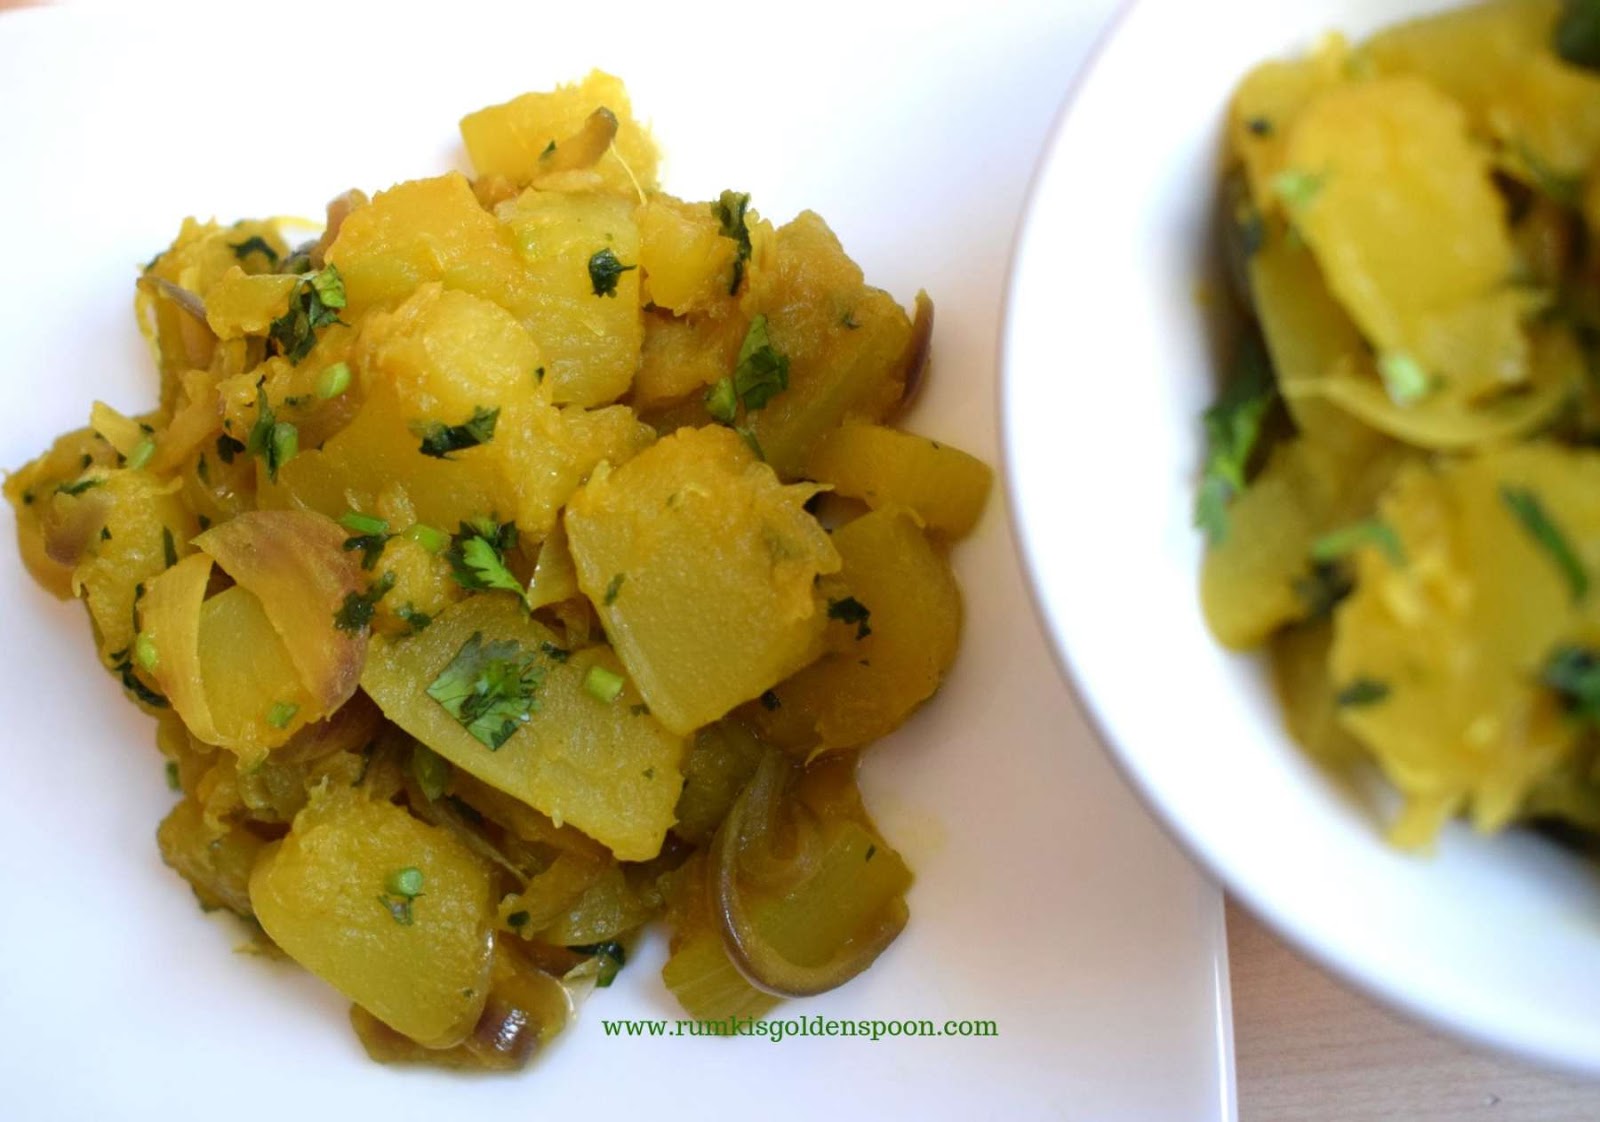 Vegetarian Marrow Recipes, Marrow Fry, marrow recipes, marrow curry, Rumki's Golden Spoon